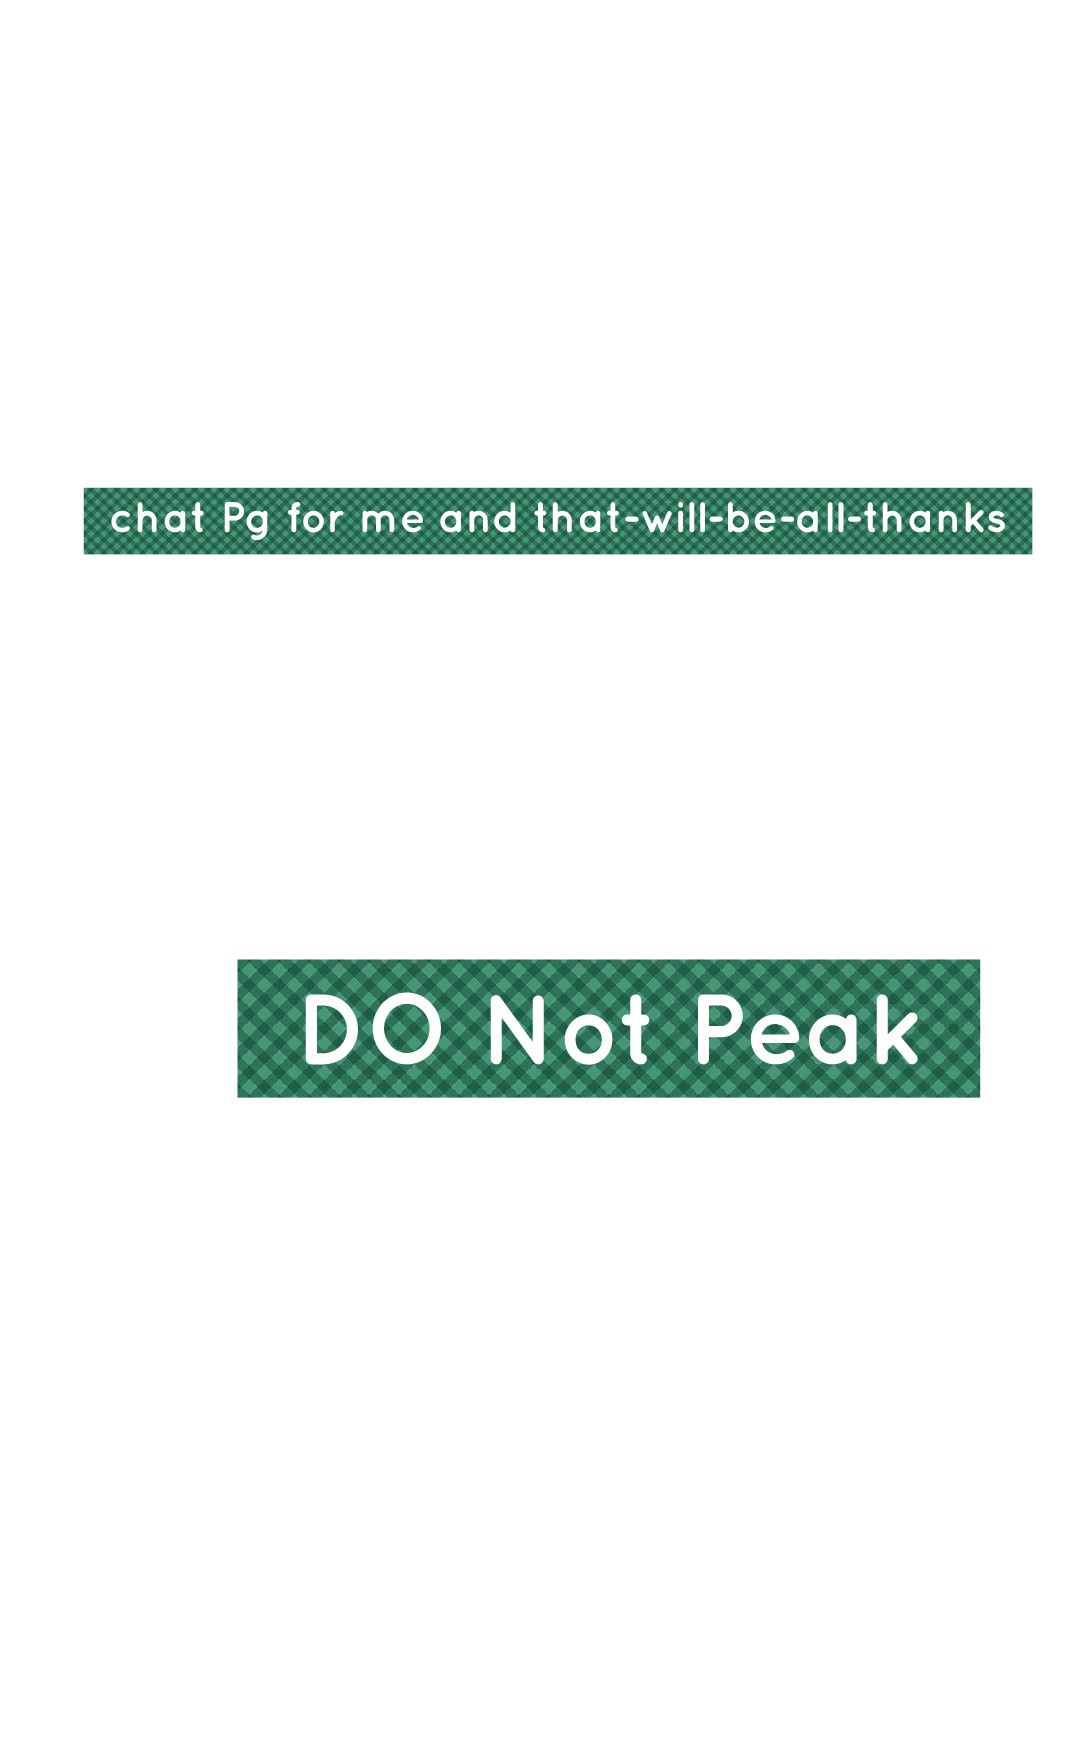 Don't Peak